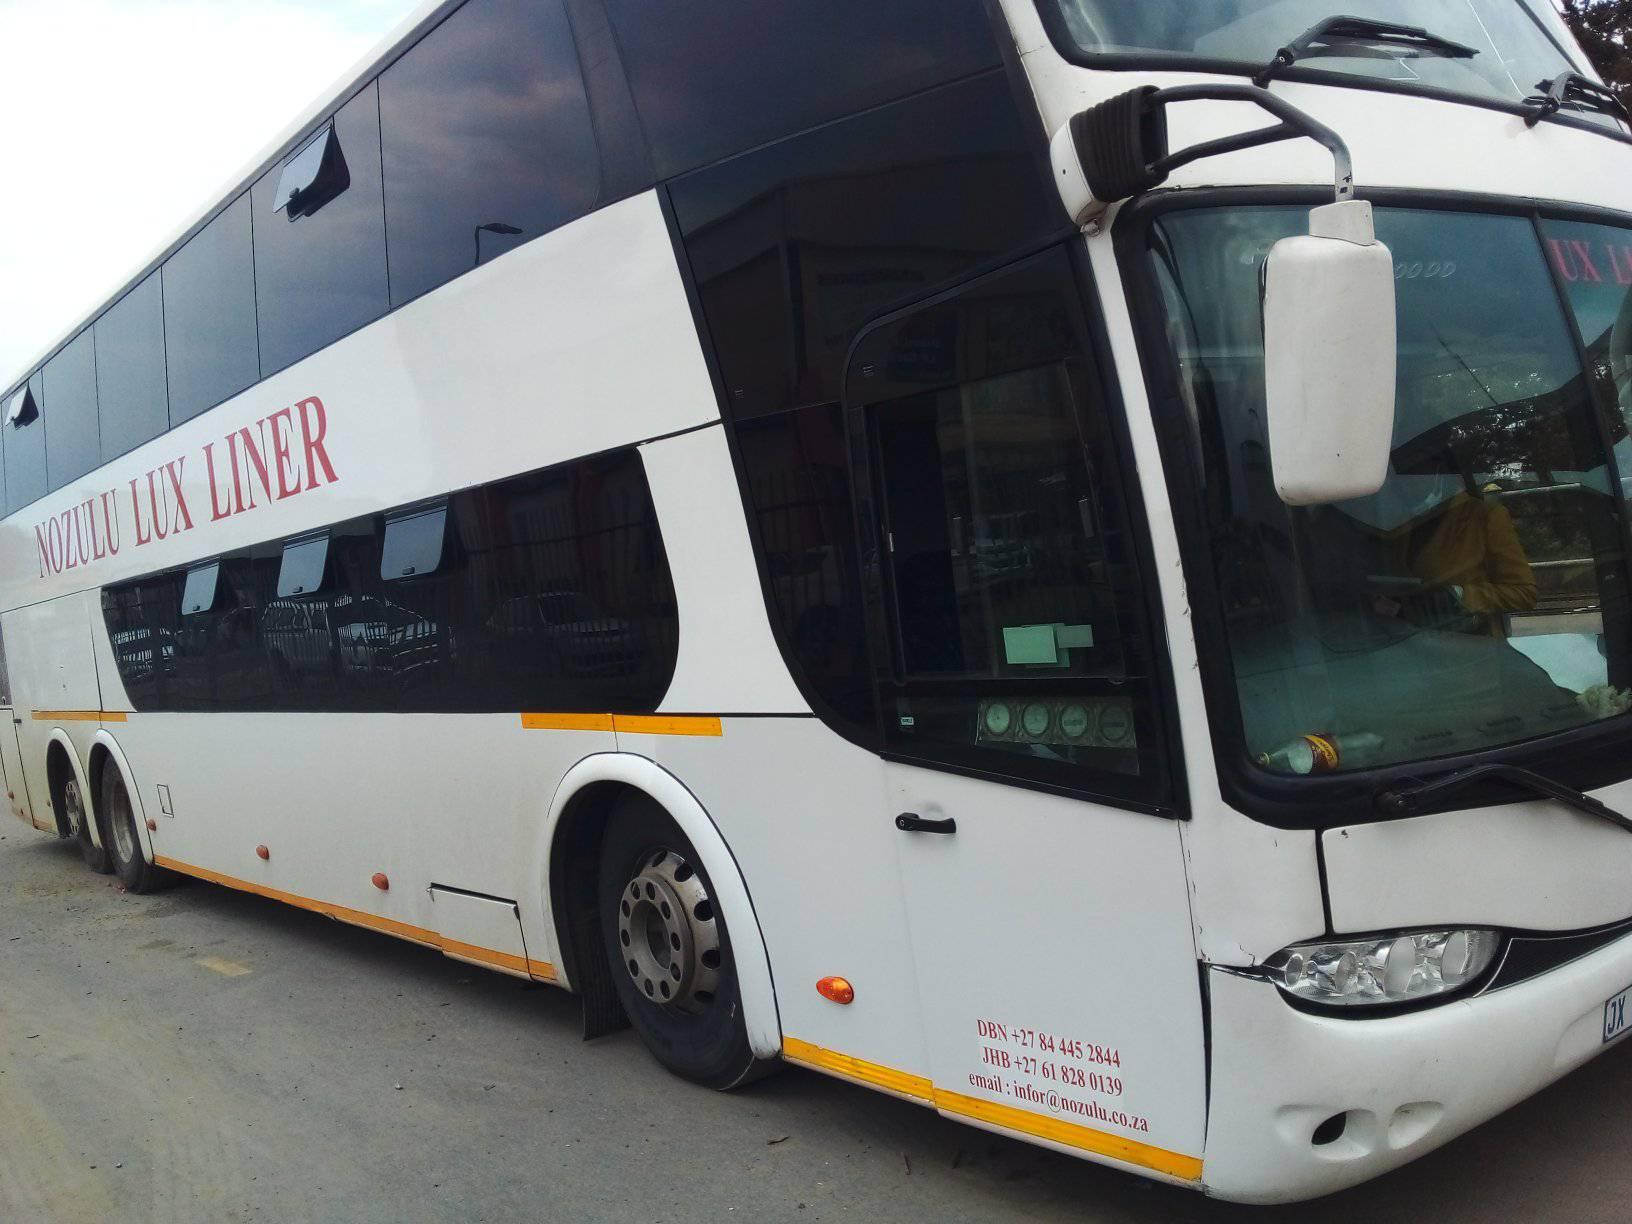 Nozulu Lux Liner coach on fire in Durban